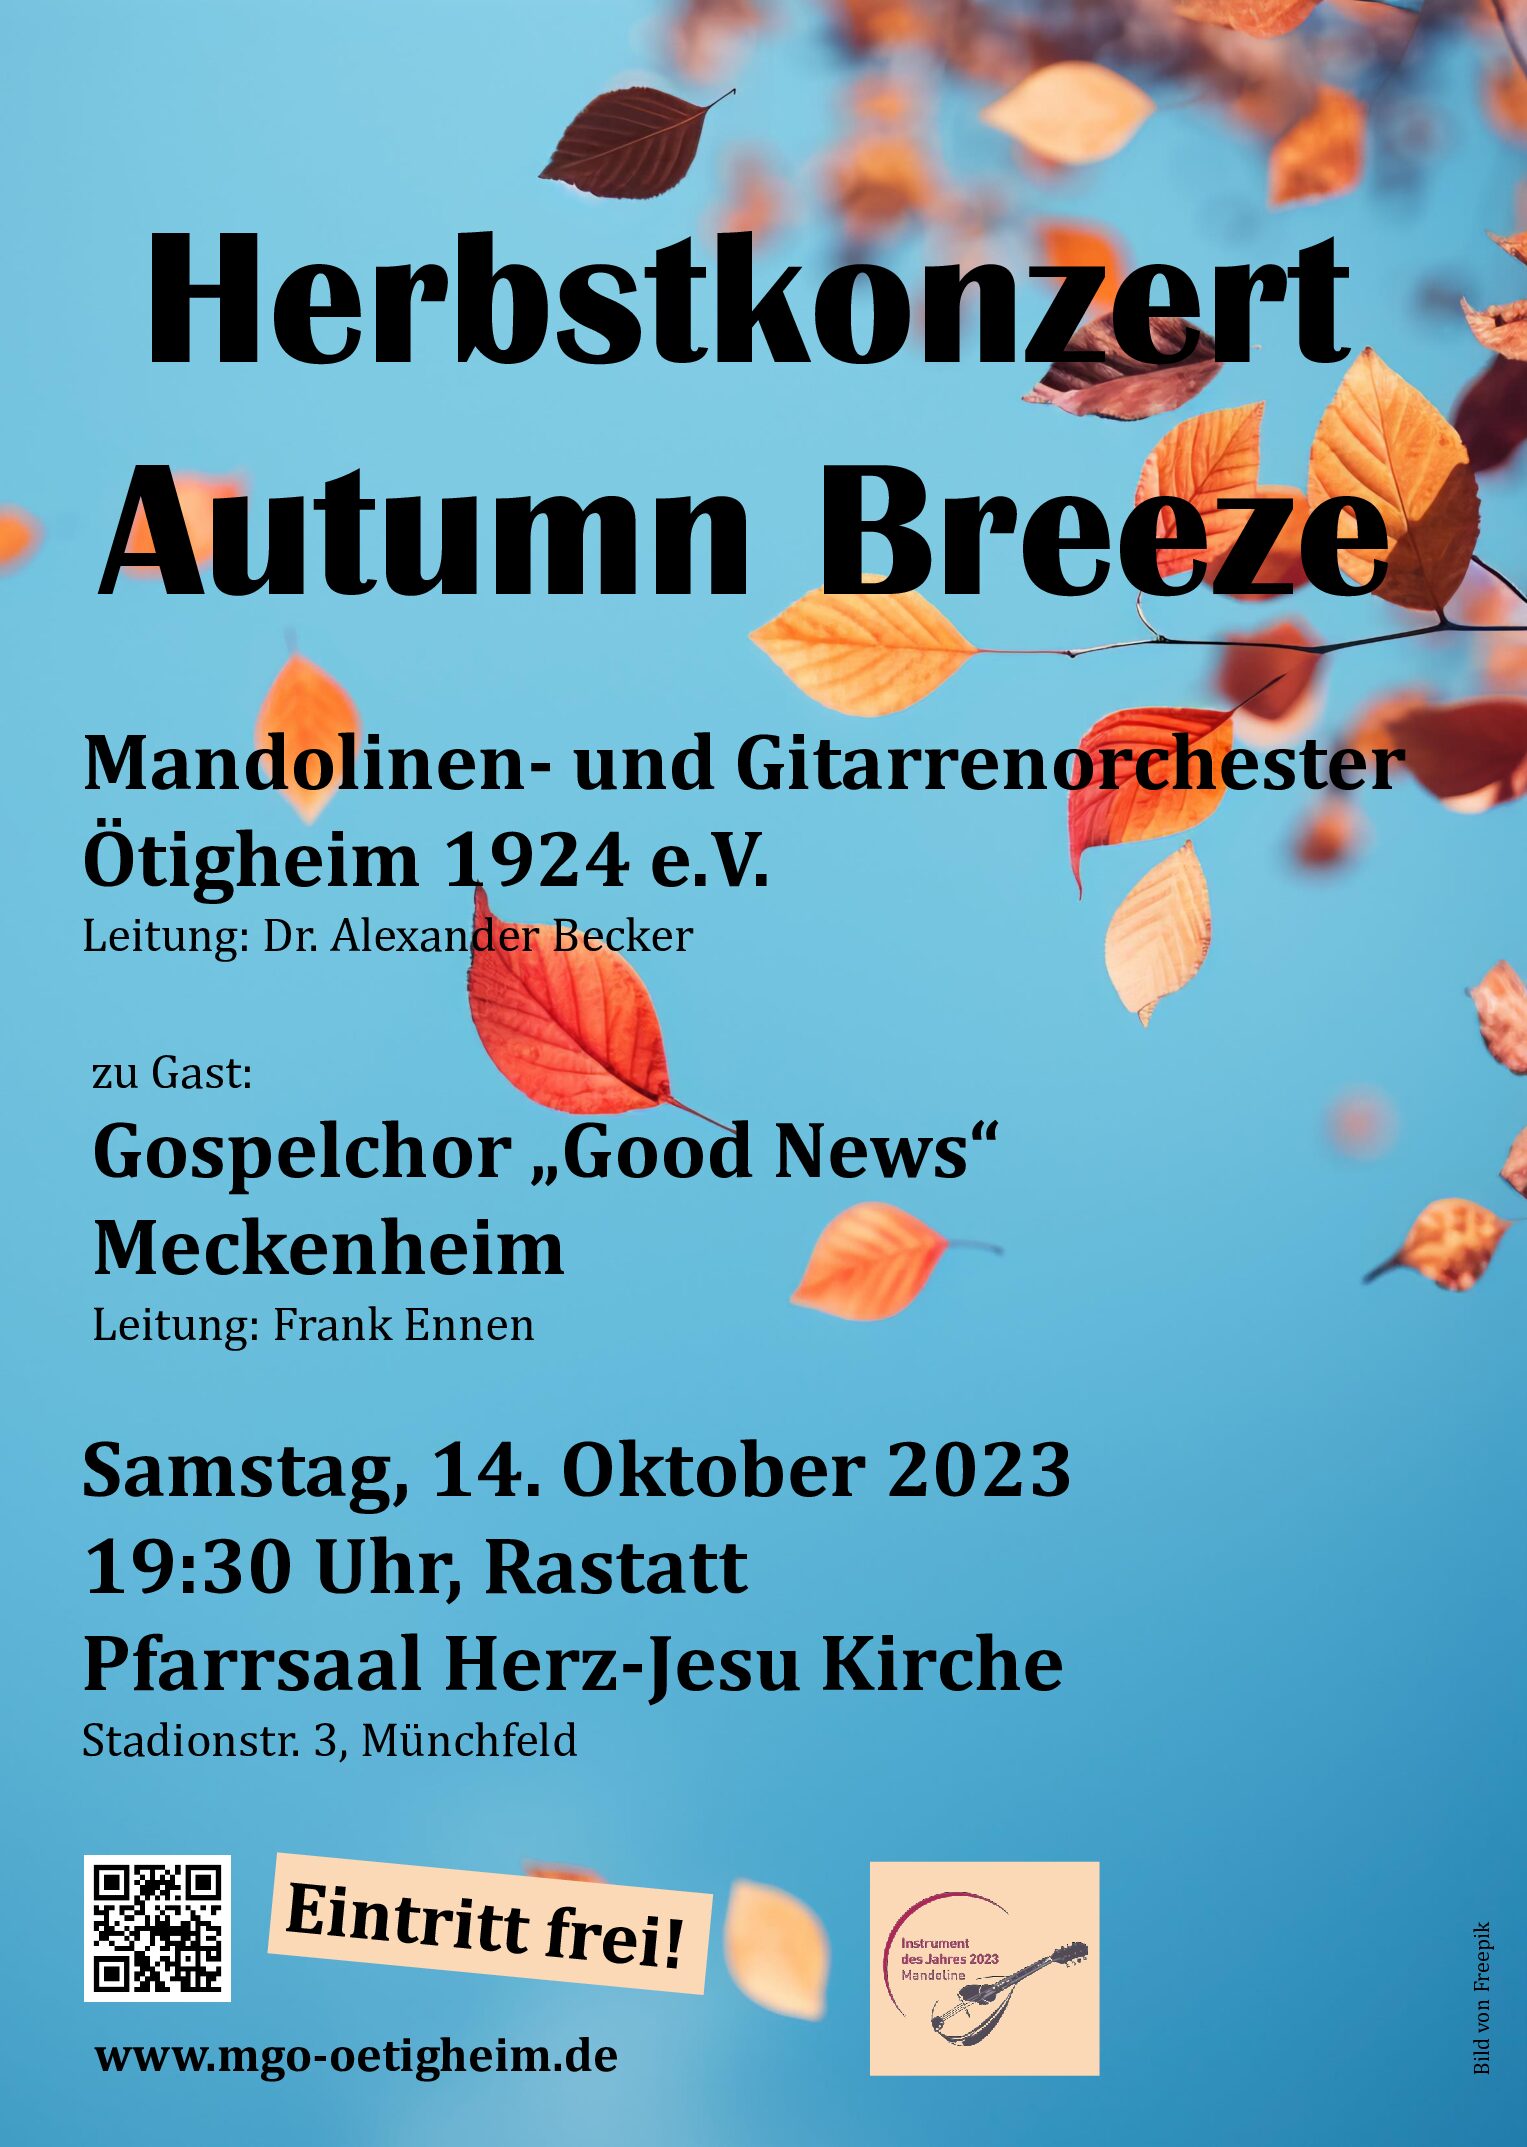 Einladung zum Herbstkonzert „Autumn Breeze“ am Samstag, 14.10.2023